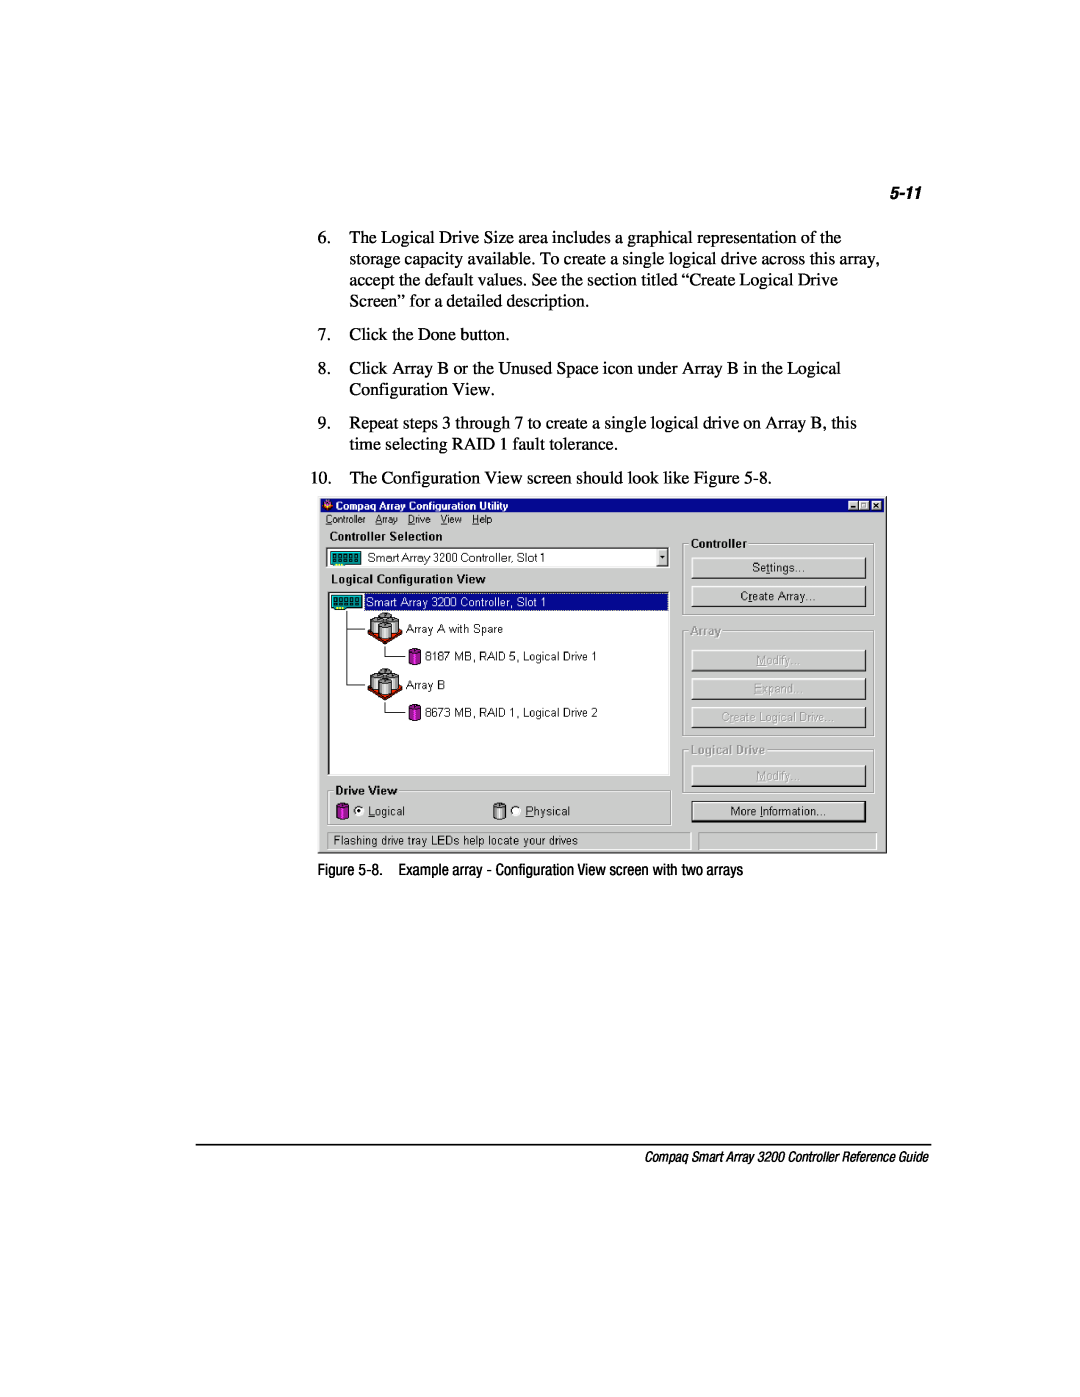 Compaq 3200 manual 5-11, Click the Done button 